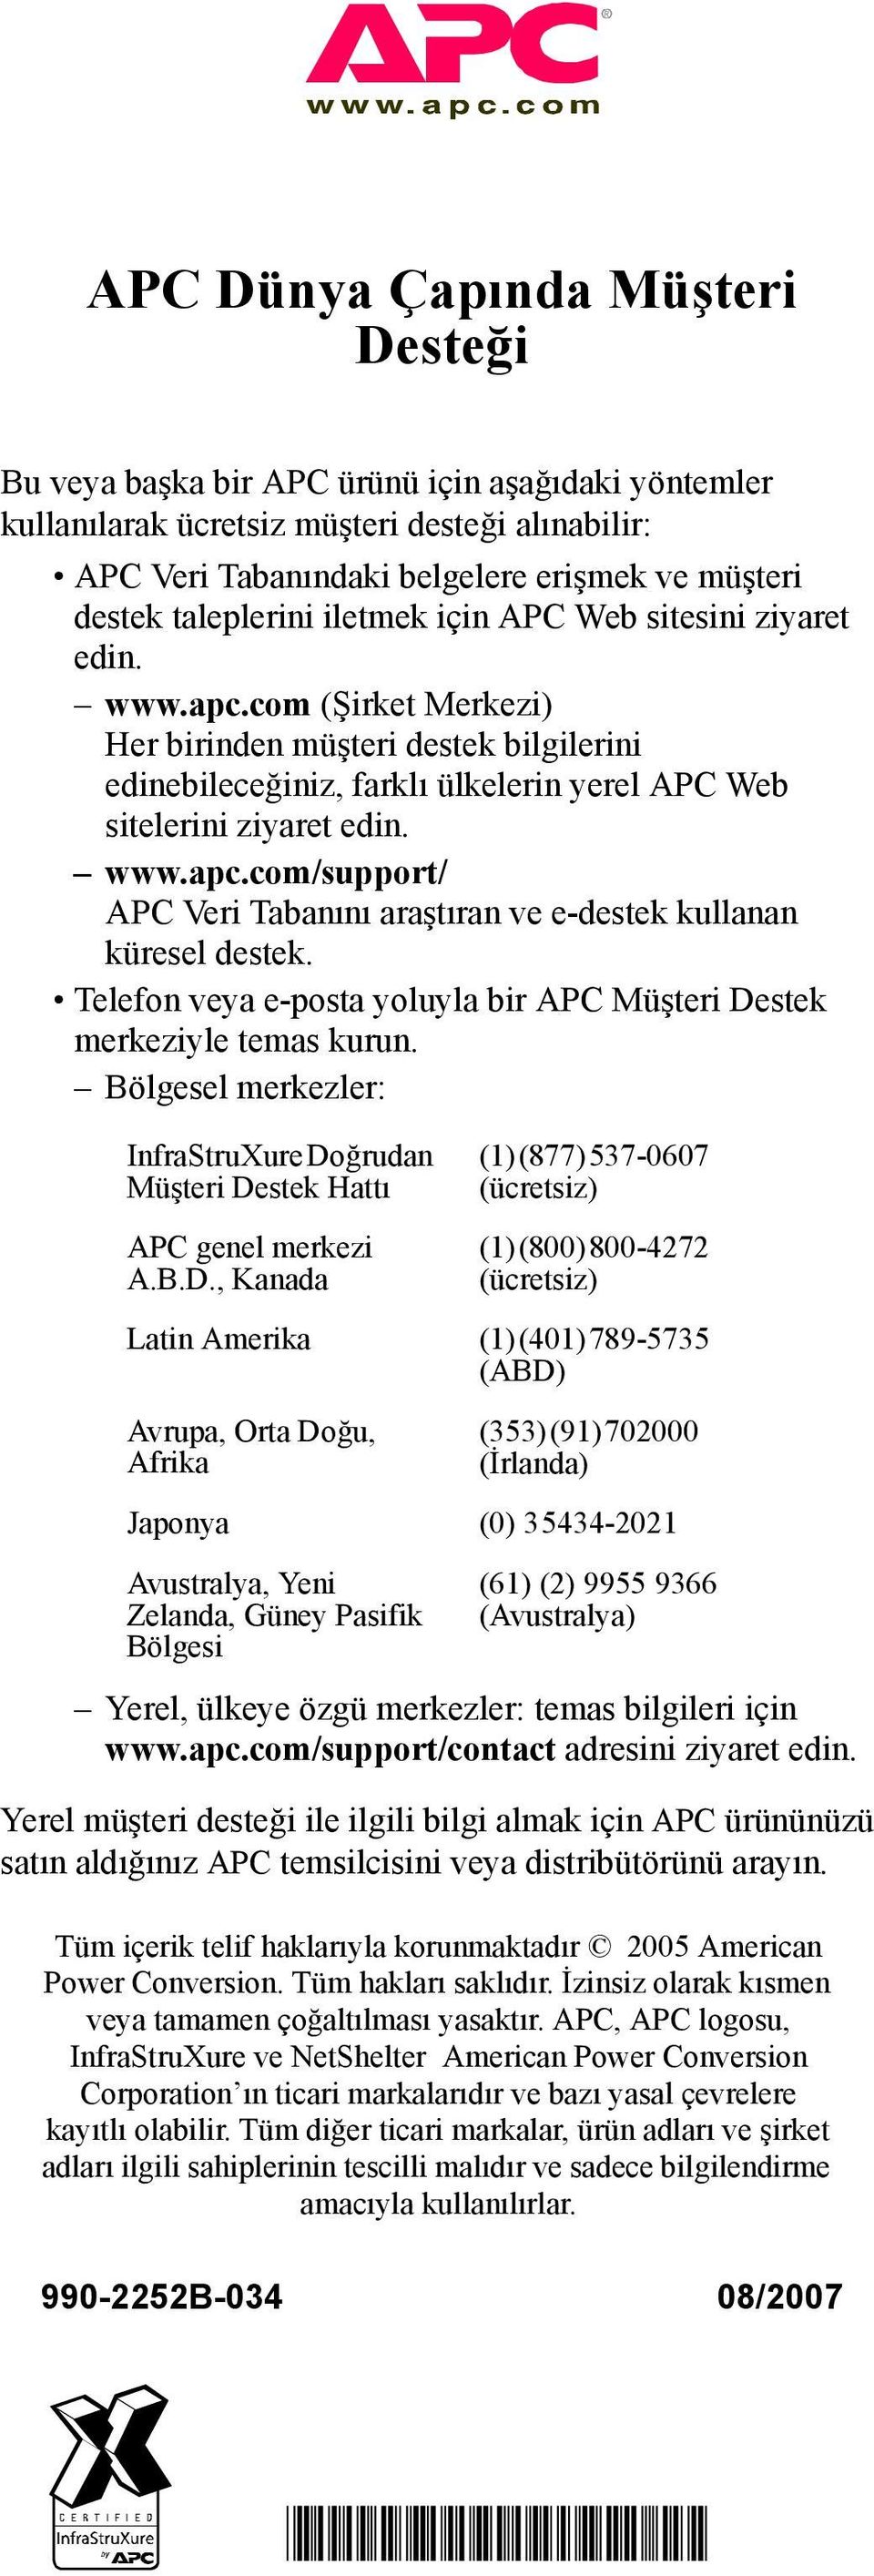 www.apc.com/support/ APC Veri Tabanını araştıran ve e-destek kullanan küresel destek. Telefon veya e-posta yoluyla bir APC Müşteri Destek merkeziyle temas kurun.